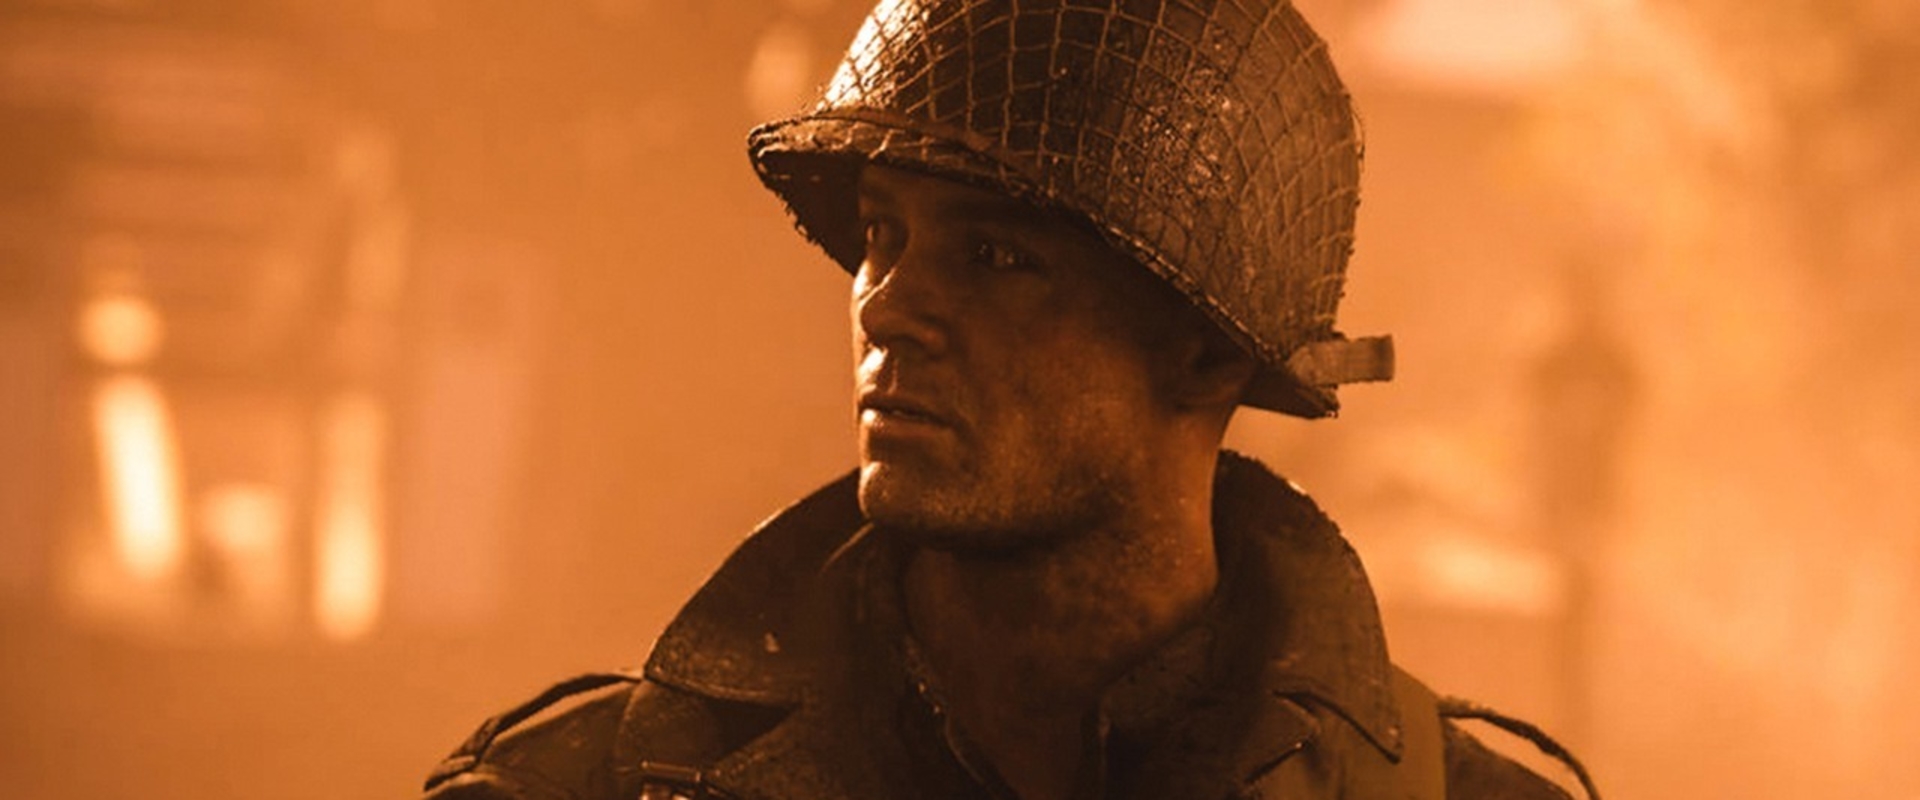 Megjött a Call of Duty: WWII gépigénye és indul az előtöltés is!